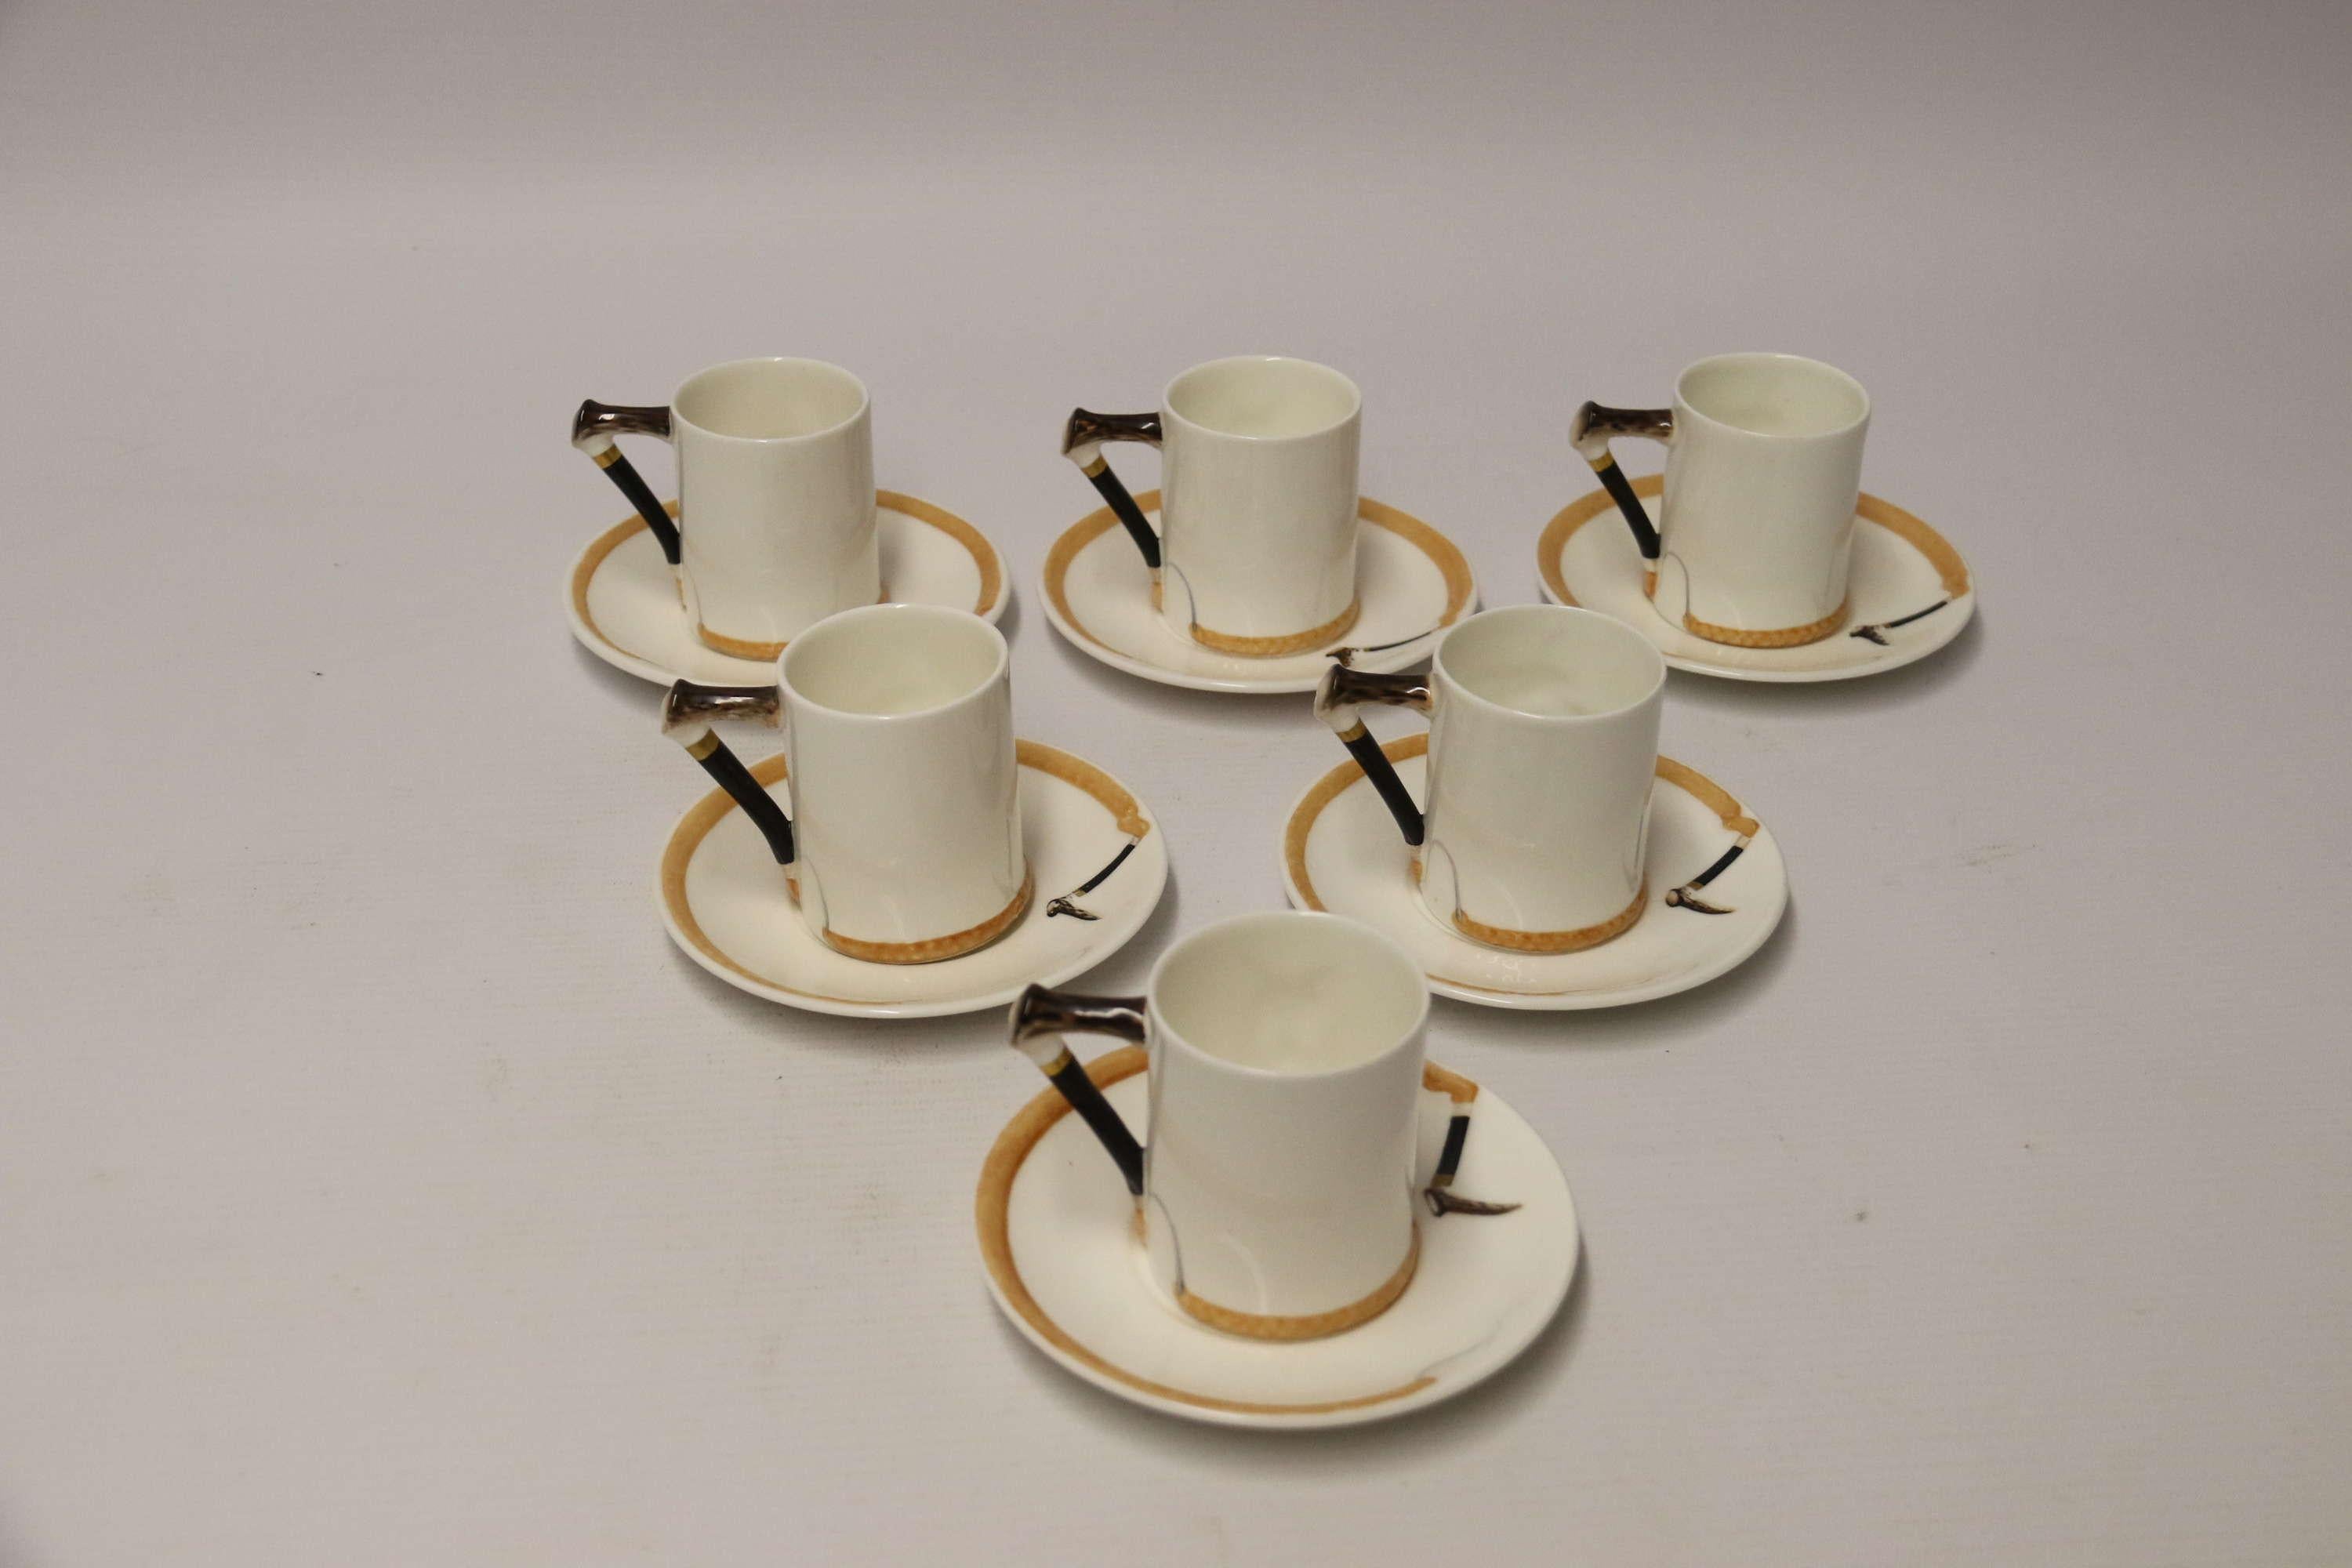 Ein Satz von sechs englischen Fuchsjagd Royal Doulton Kaffeetassen und Untertassen.

Ein sehr dekorativer Satz von sechs englischen Royal Doulton Kaffeetassen und Untertassen mit einem Satz versilberter Kaffeelöffel. Dieses interessante Set ist